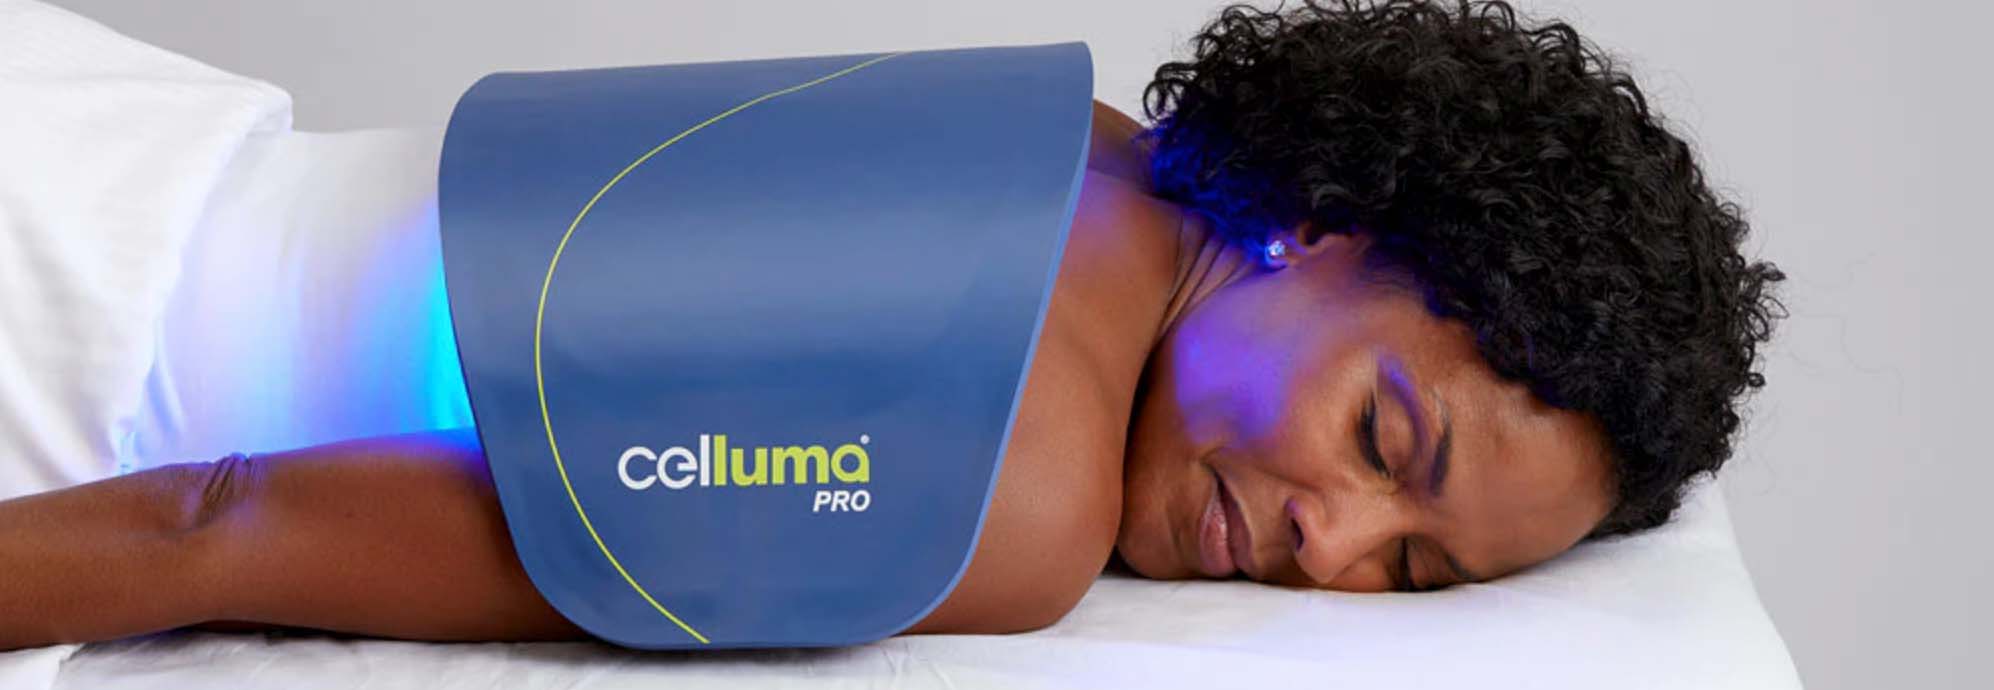 Celluma device on person's back